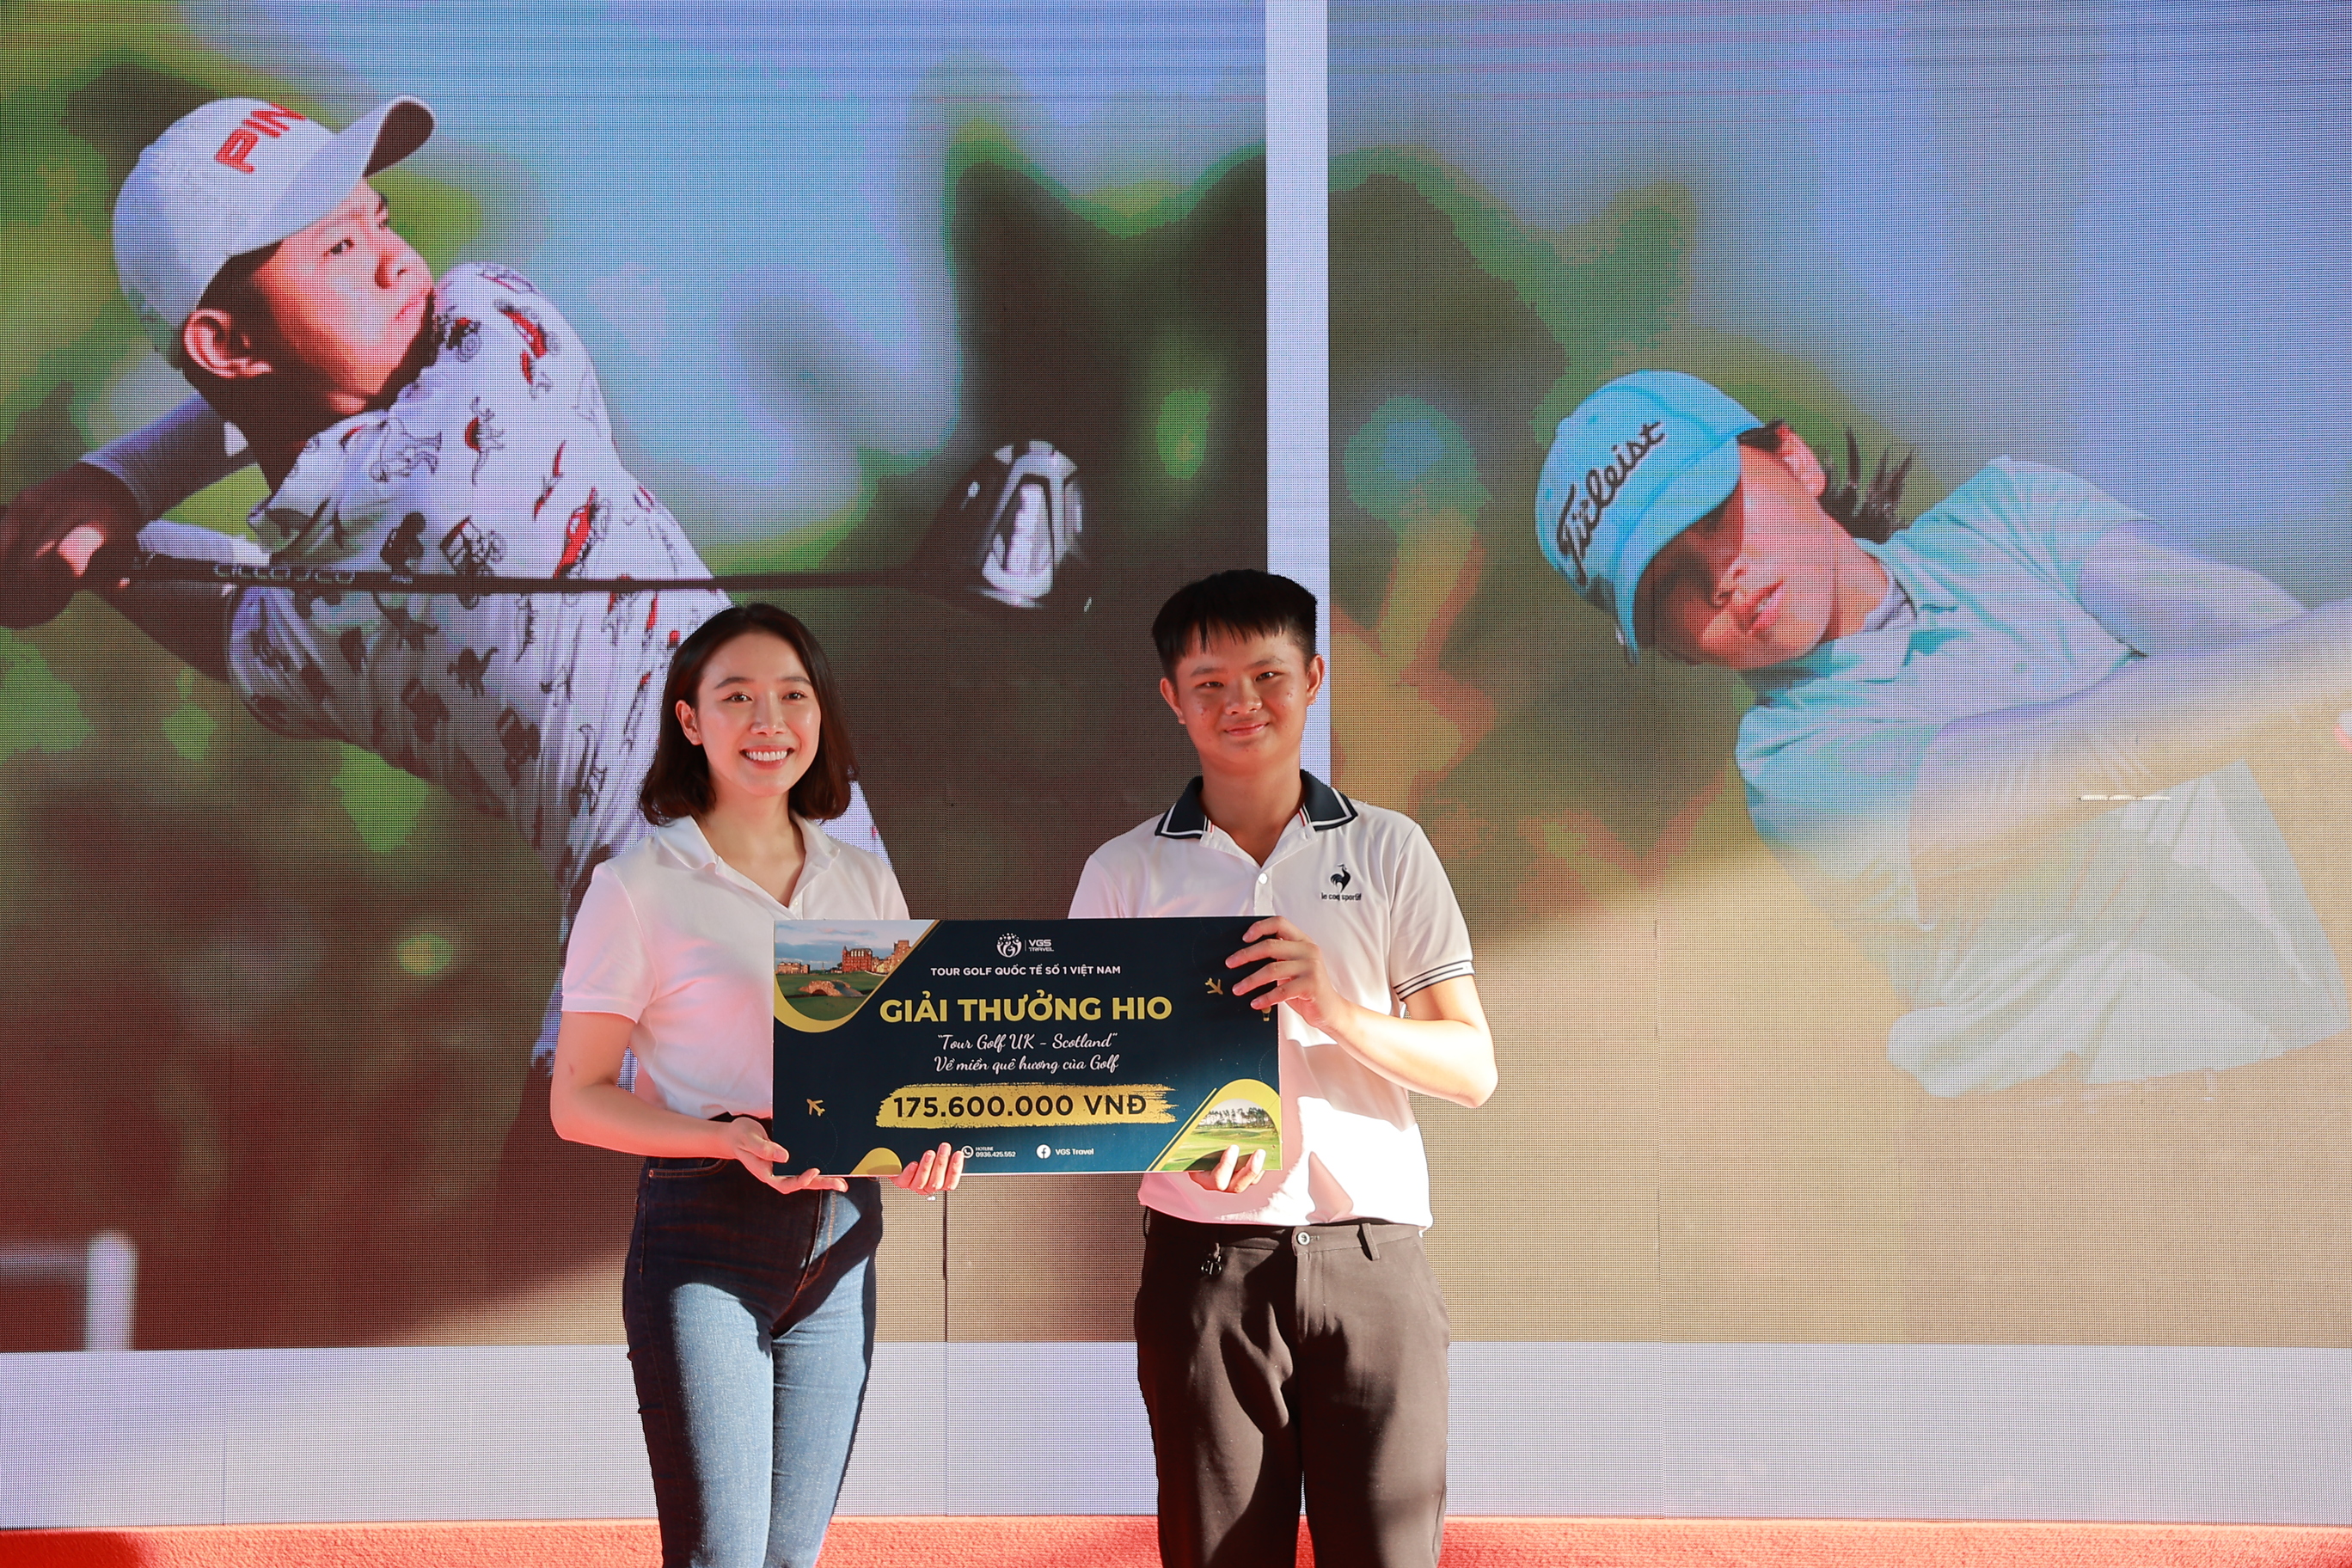 VJO 2022 - T99 Cup: VGolf Travel trao giải HIO trị giá 175.600.000 VNĐ cho golfer Ngô Vĩnh Tường